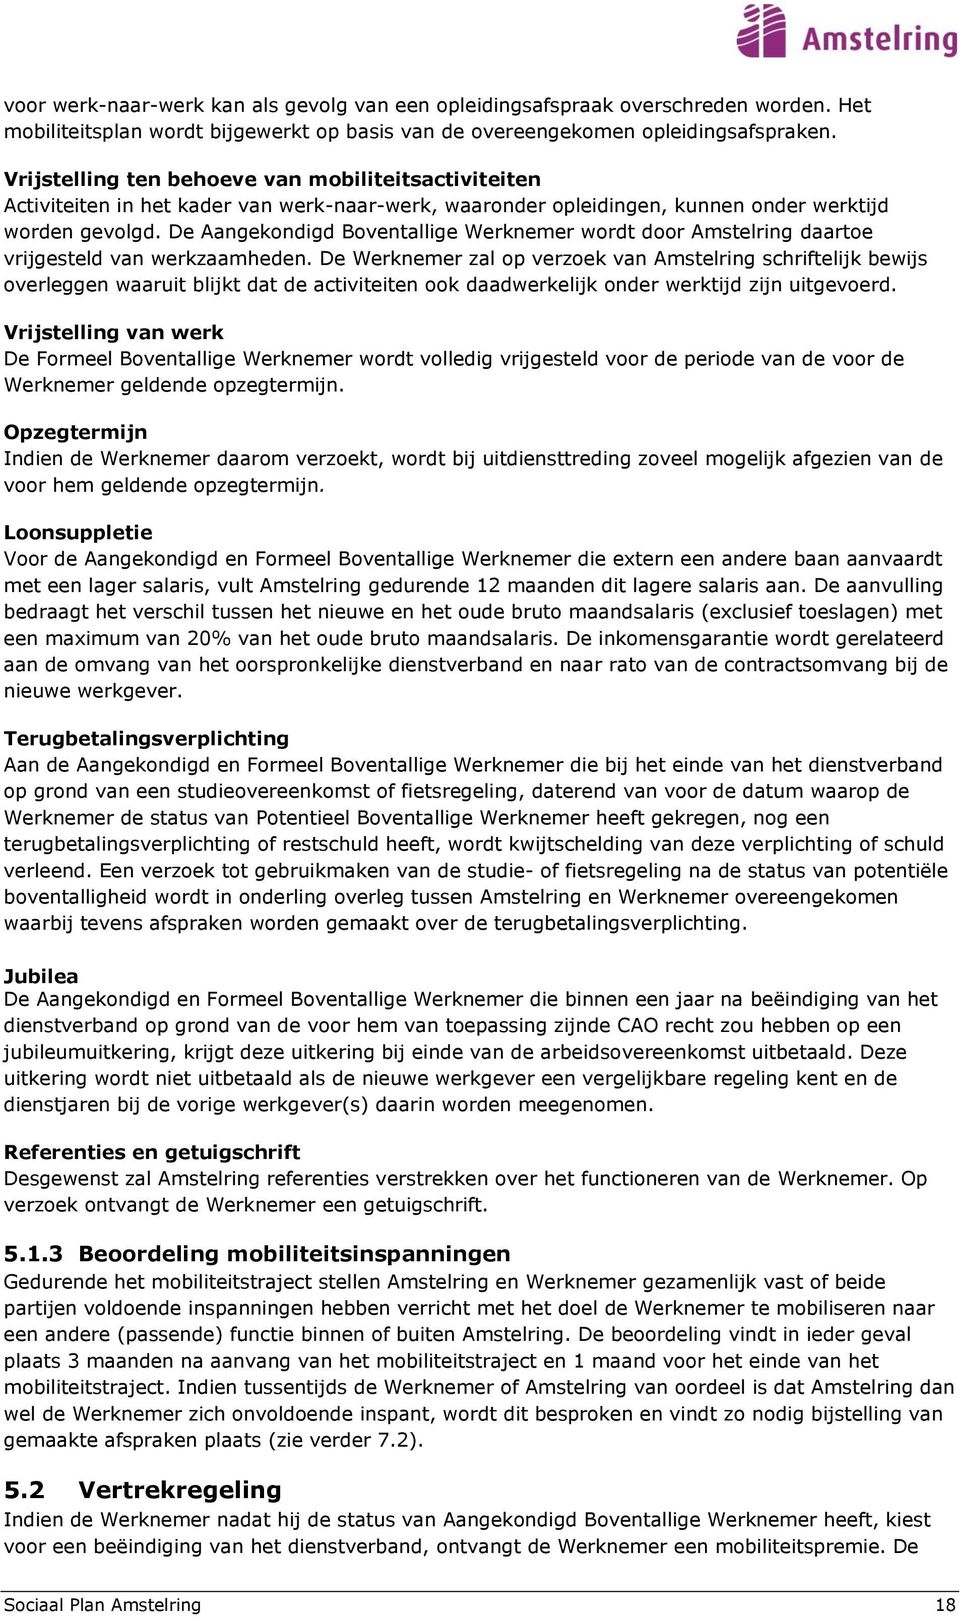 De Aangekondigd Boventallige Werknemer wordt door Amstelring daartoe vrijgesteld van werkzaamheden.